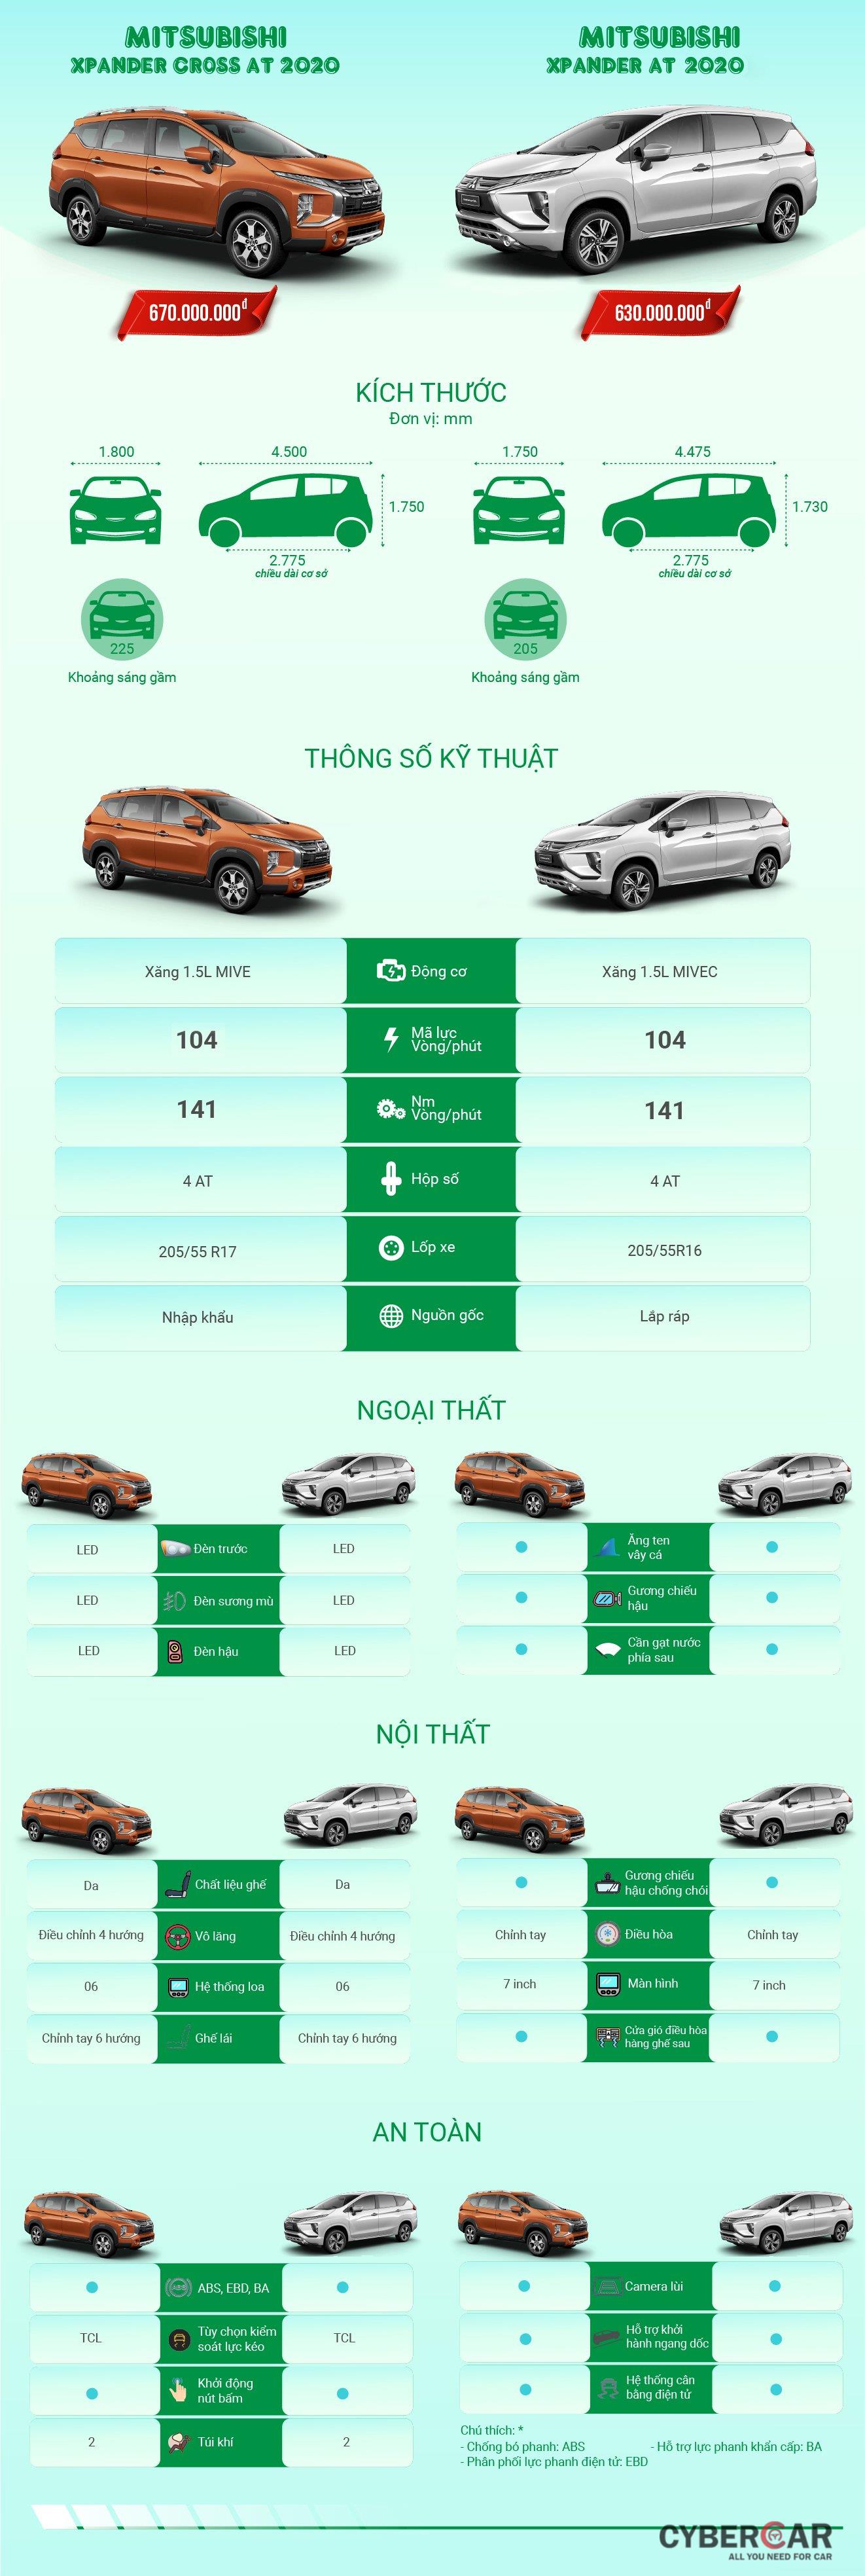 So sánh chi tiết thông số giữa Mitsubishi Xpander và Xpander Cross 2020.